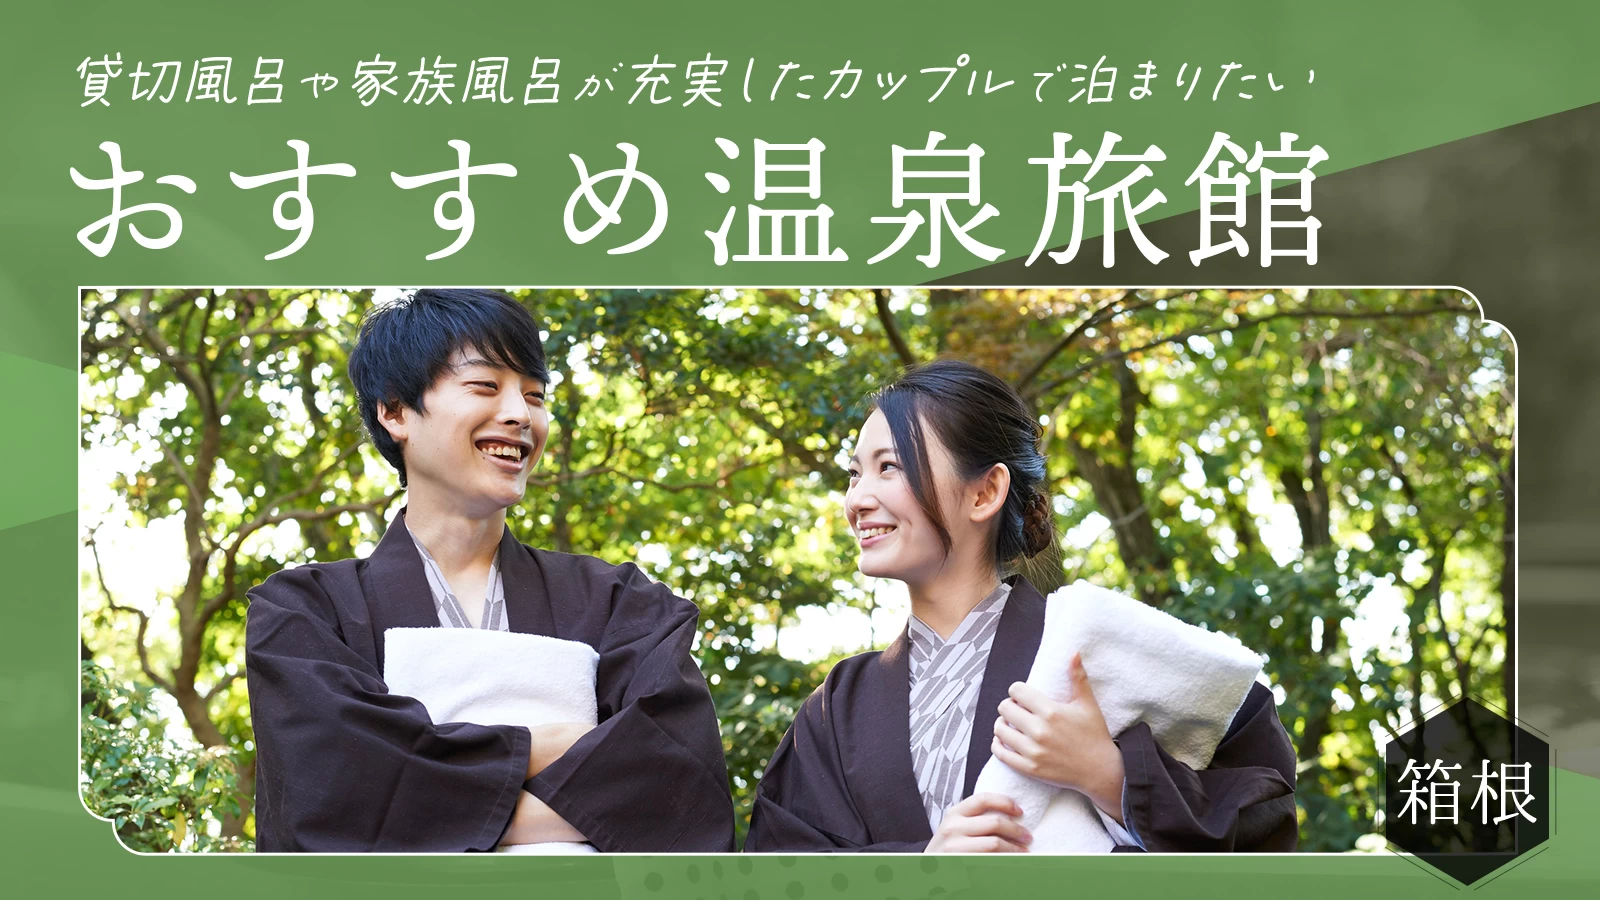 【箱根】貸切風呂や家族風呂が充実したカップルで泊まりたいおすすめ温泉旅館10選